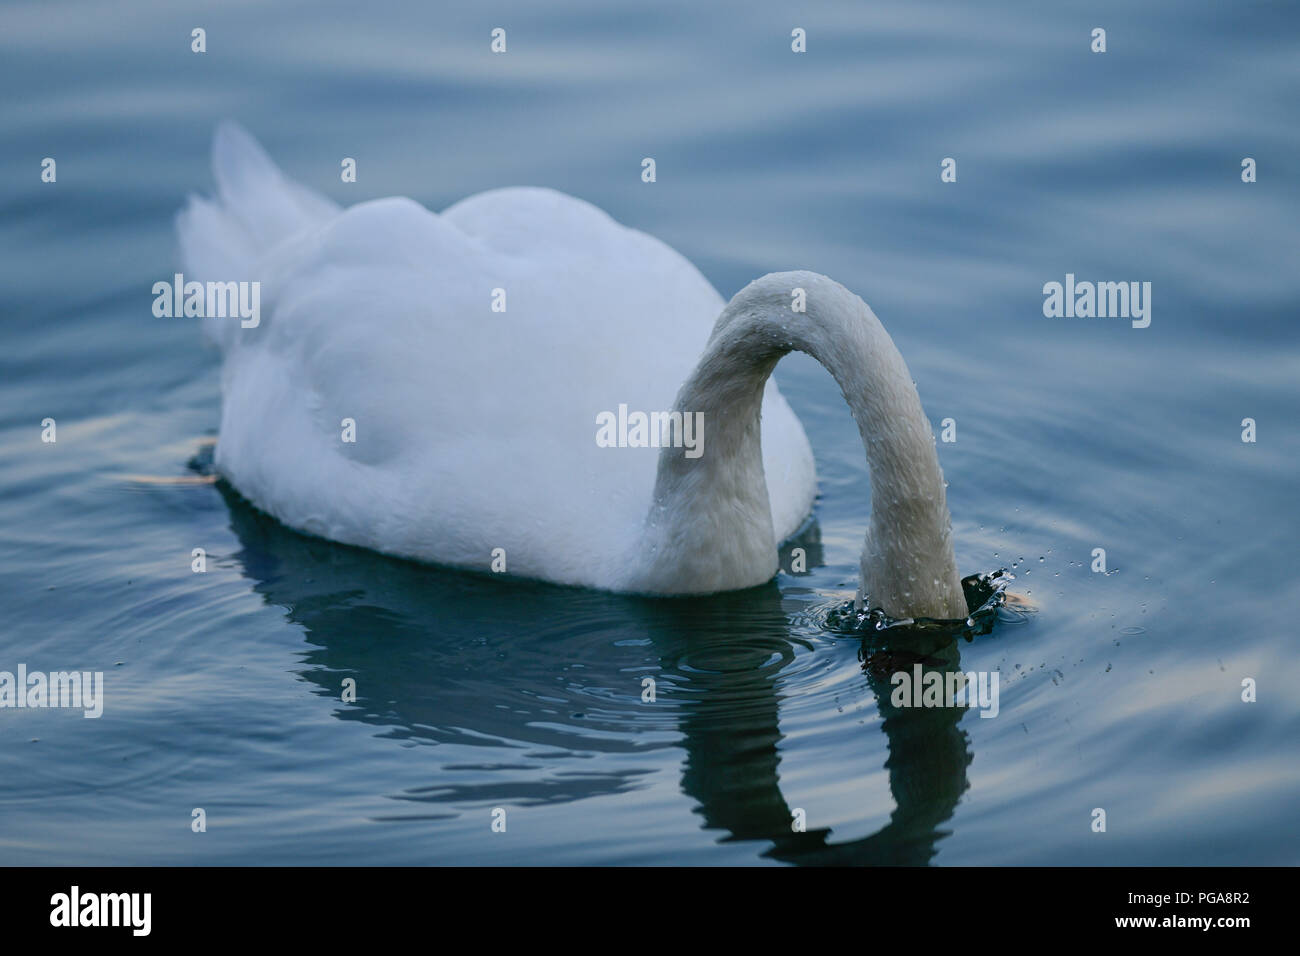 Cisne (Cygnus olor) se sumerge en el agua, Alemania Foto de stock